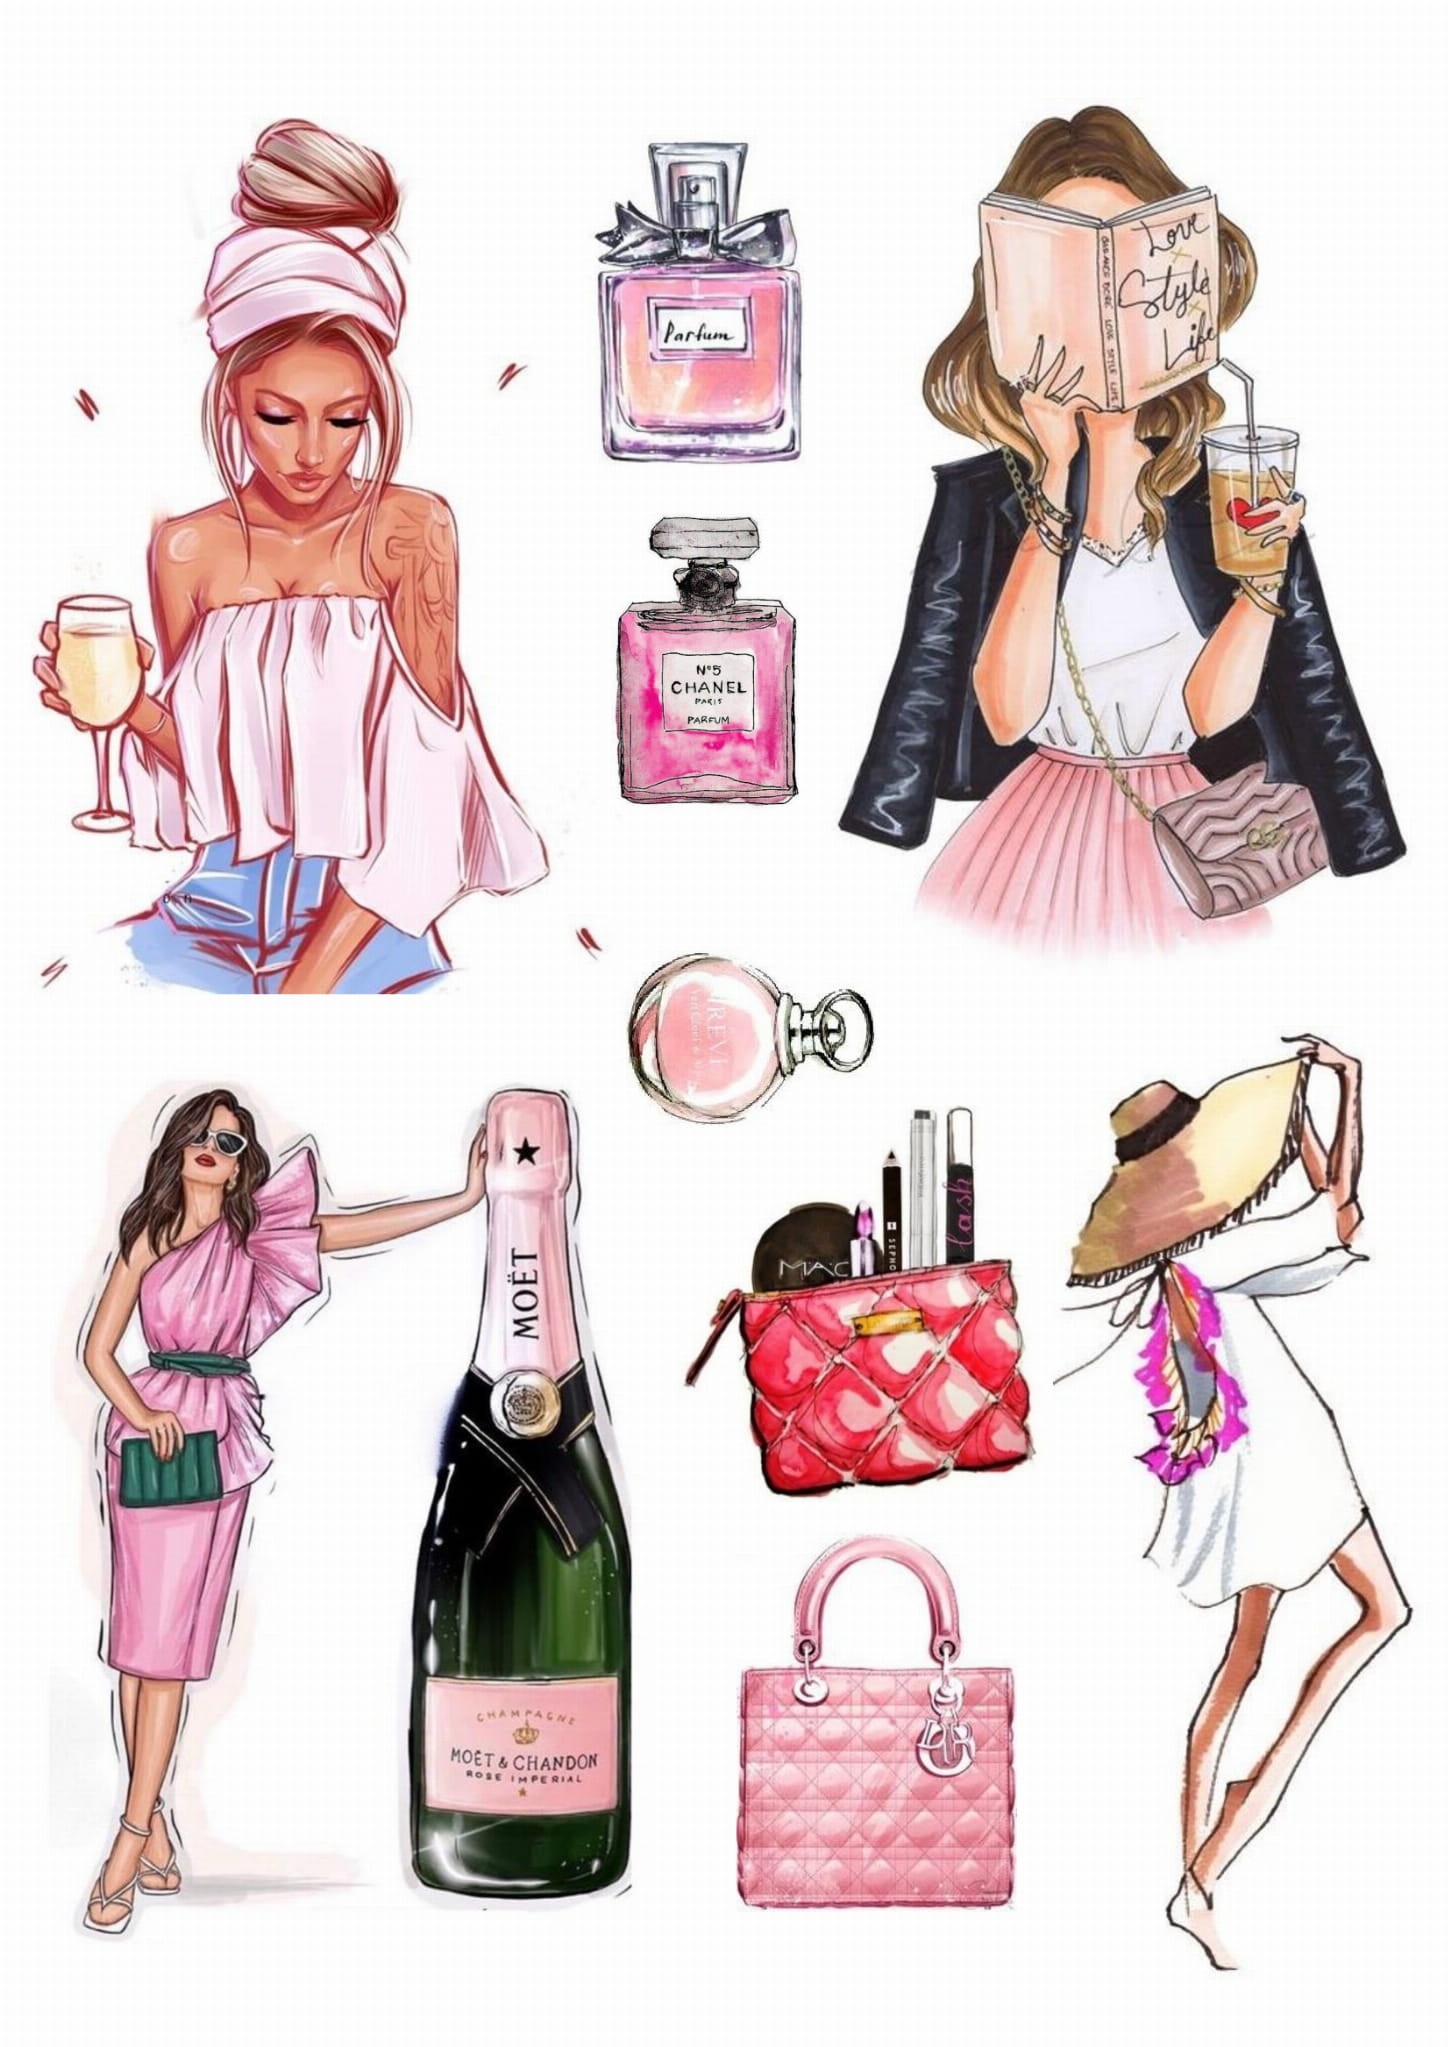 Obrázek k výrobku 23377 - Oblátka žena, parfumová taška, kozmetika (A4)